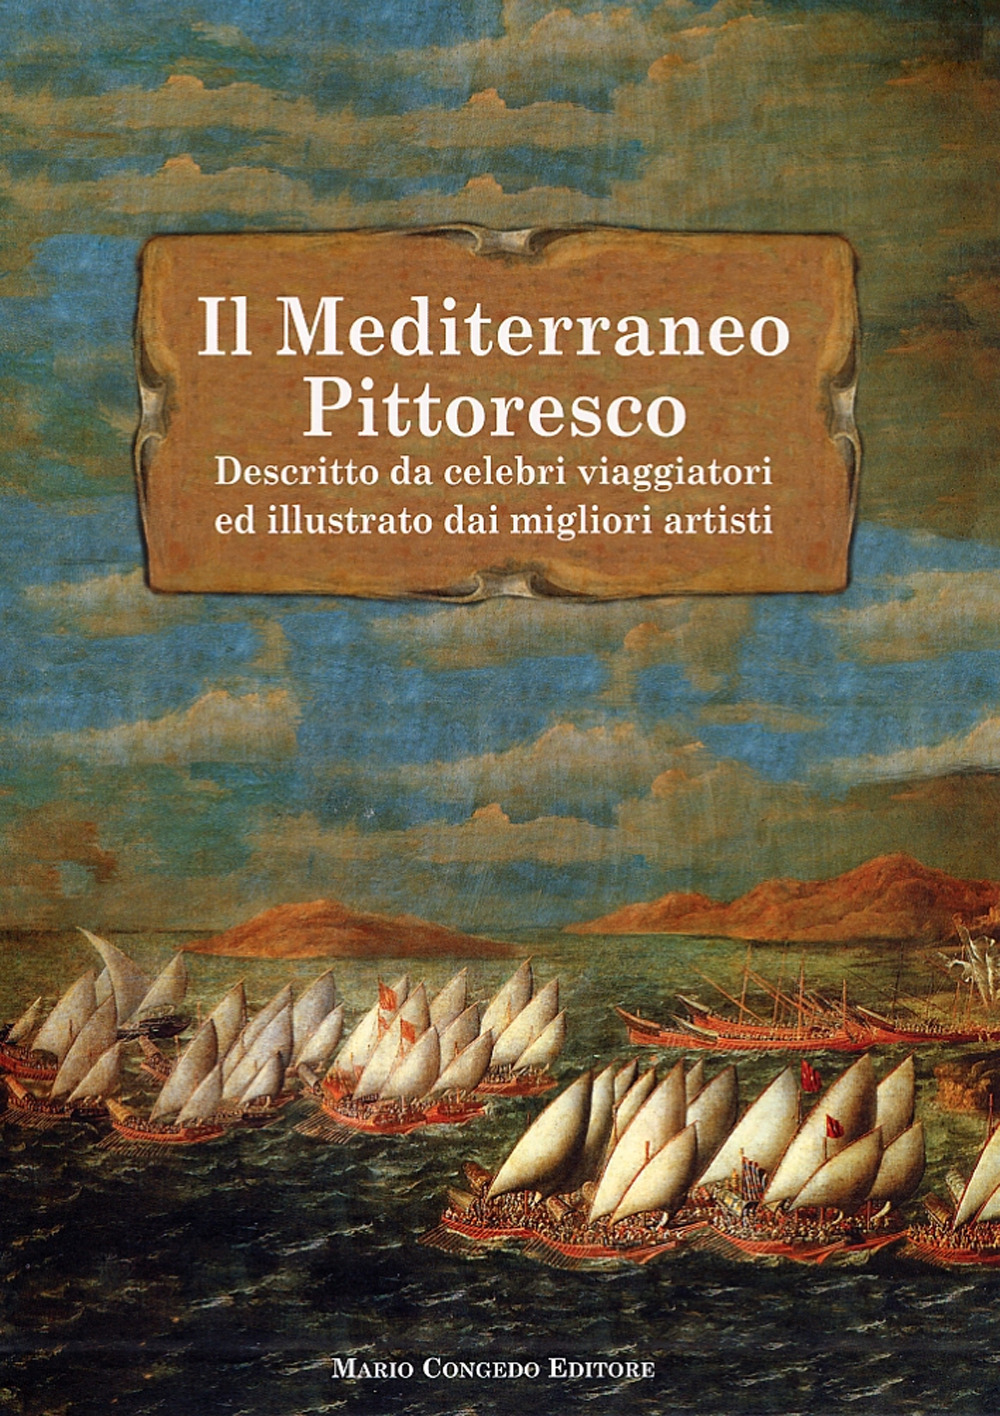 Il Mediterraneo pittoresco descritto da celebri viaggiatori ed illustrato dai migliori artisti